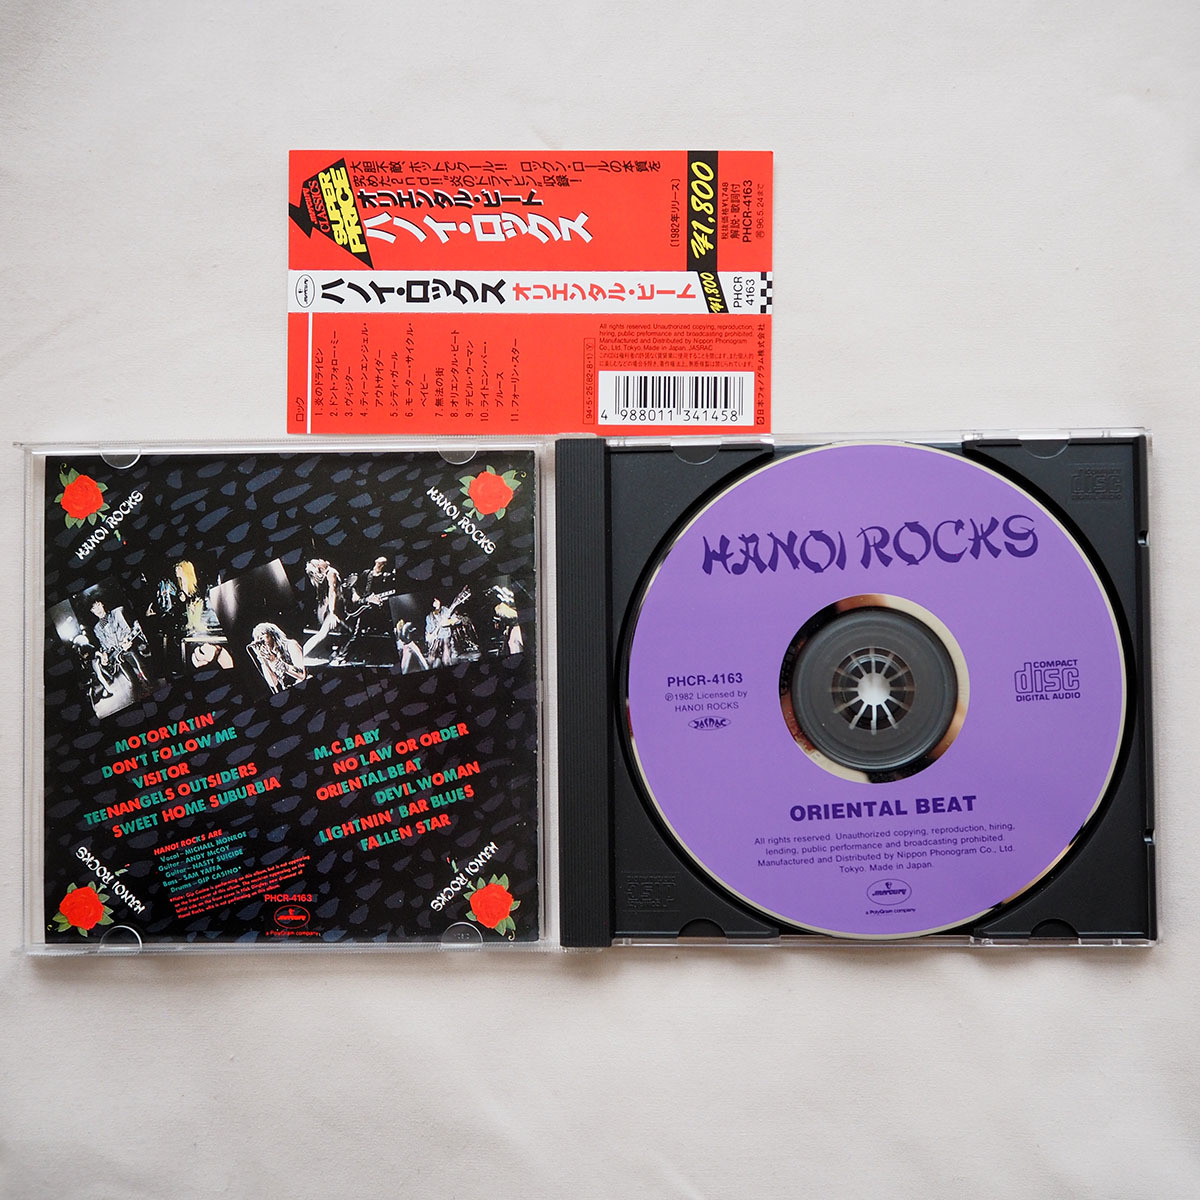 ◆ ハノイ・ロックス HANOI ROCKS / オリエンタル・ビート ORIENTAL BEAT 国内盤 帯付き 送料無料 ◆_画像3